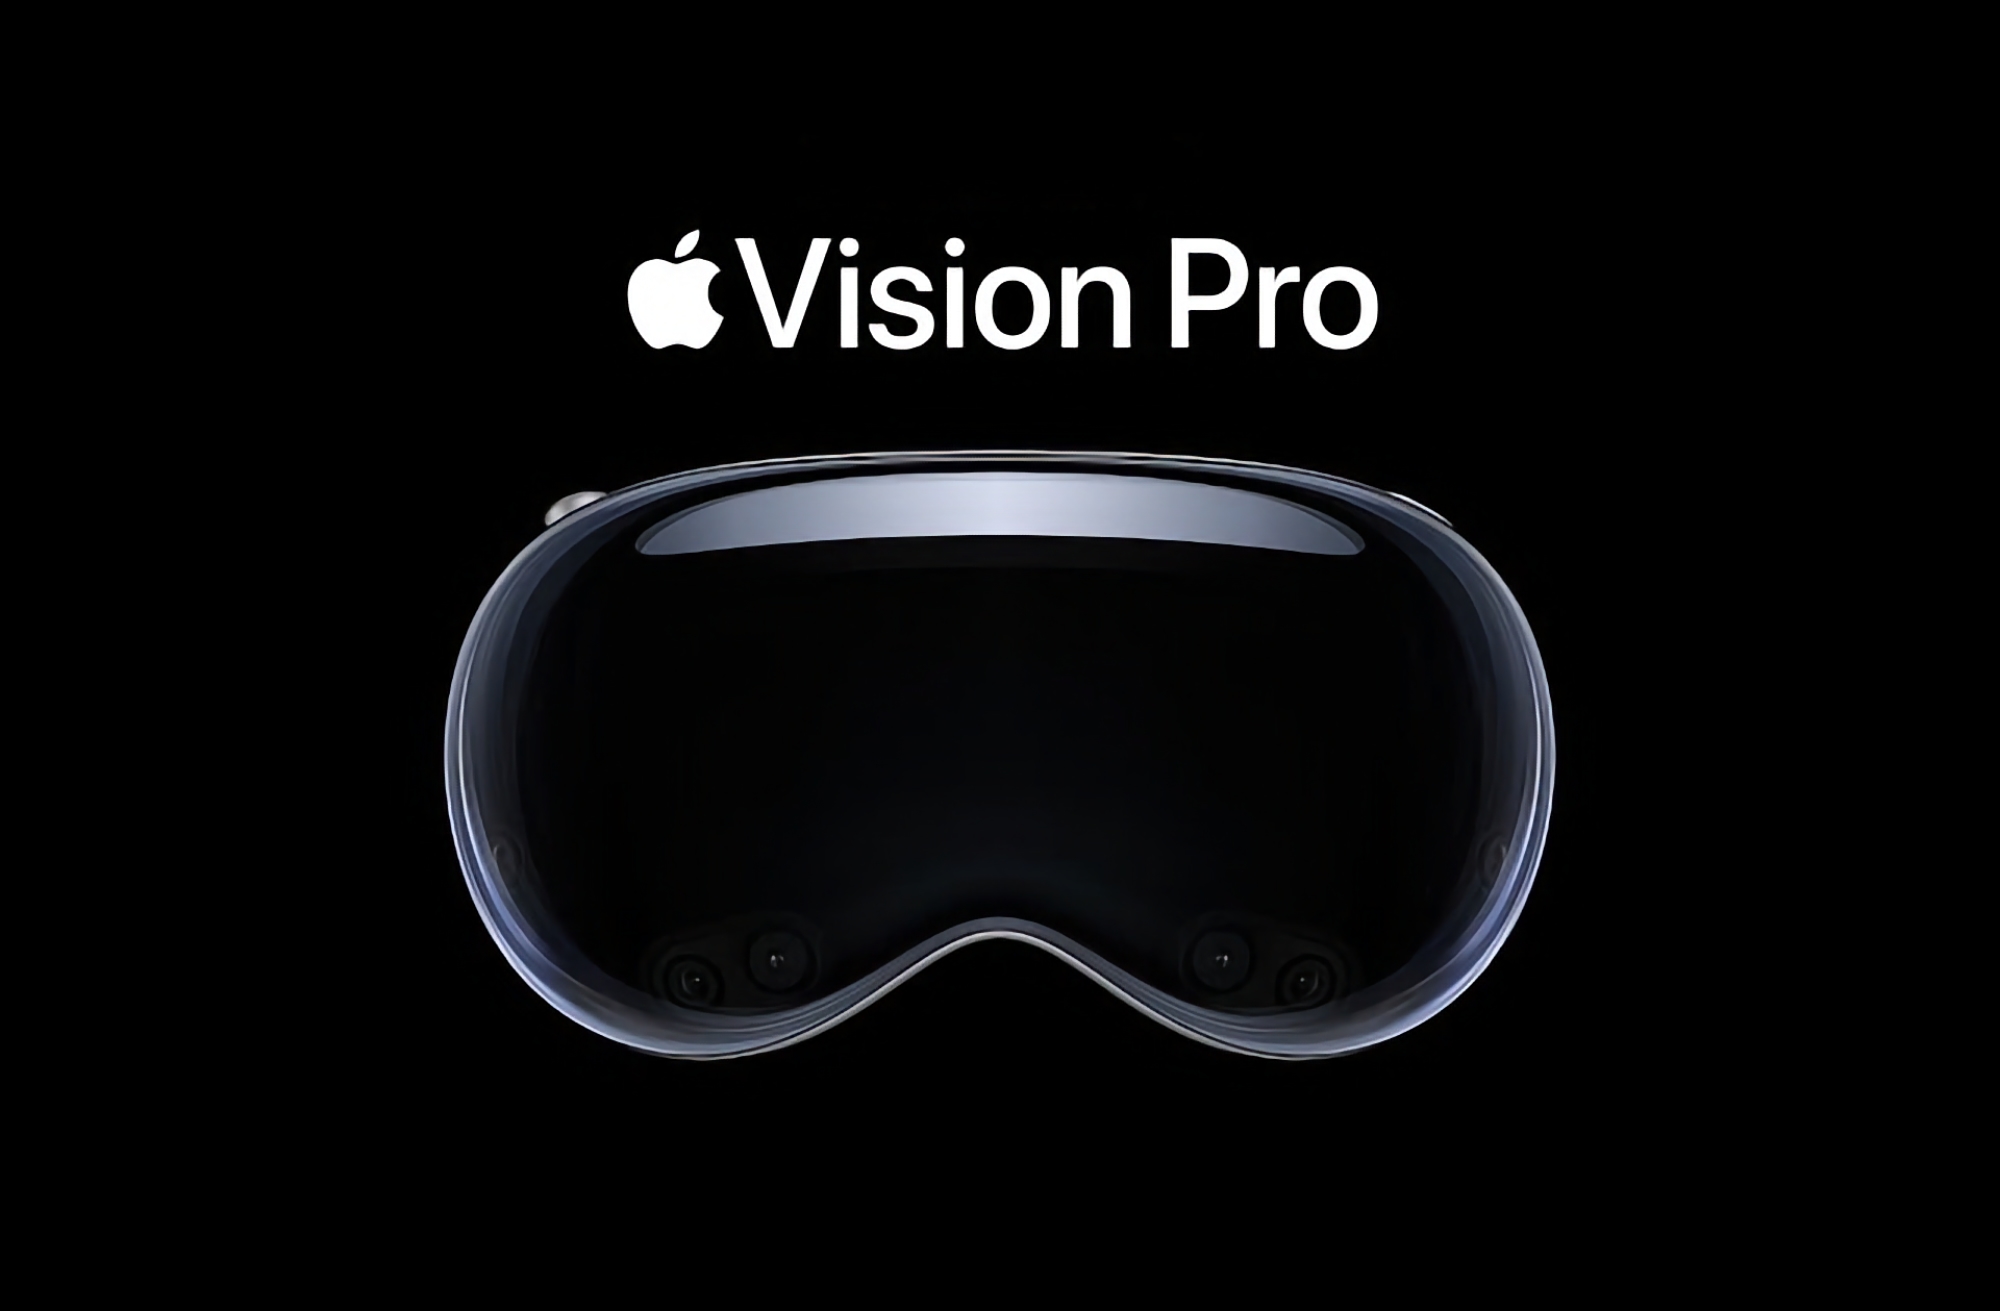 Rumeur : Apple lancera le casque Vision Pro le 26 ou le 27 janvier